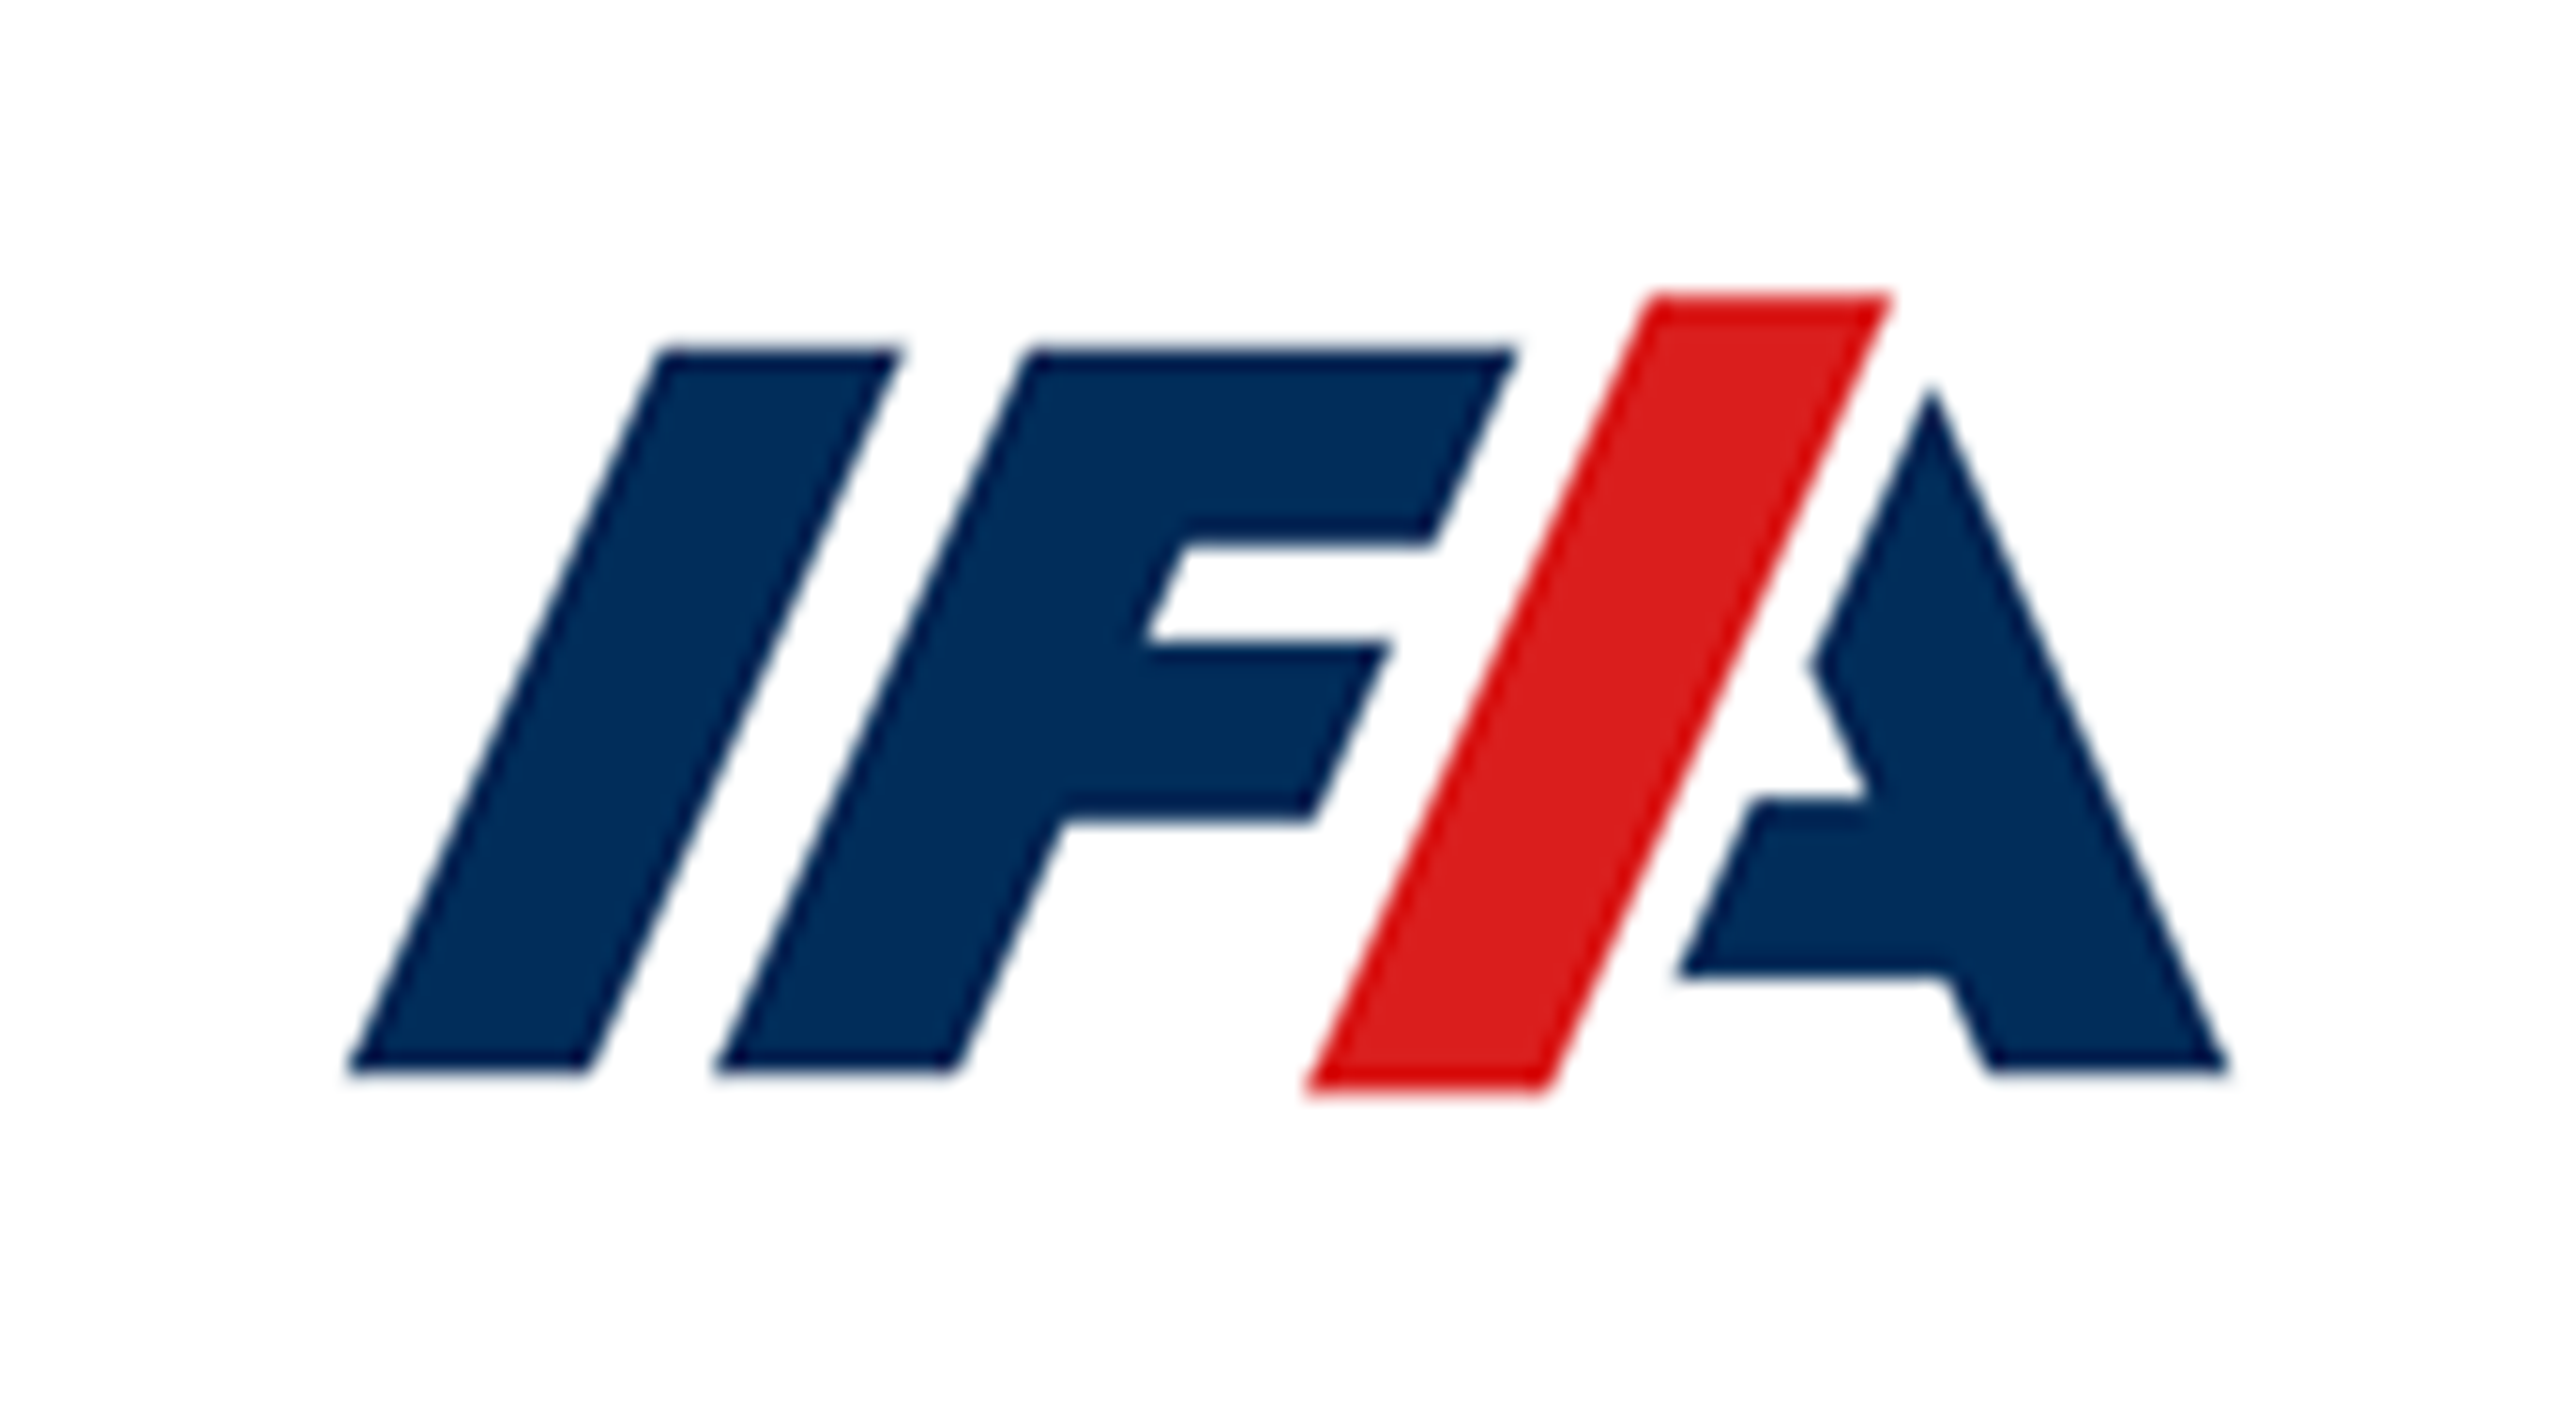 IFA Powertrain GmbH und Co. KG